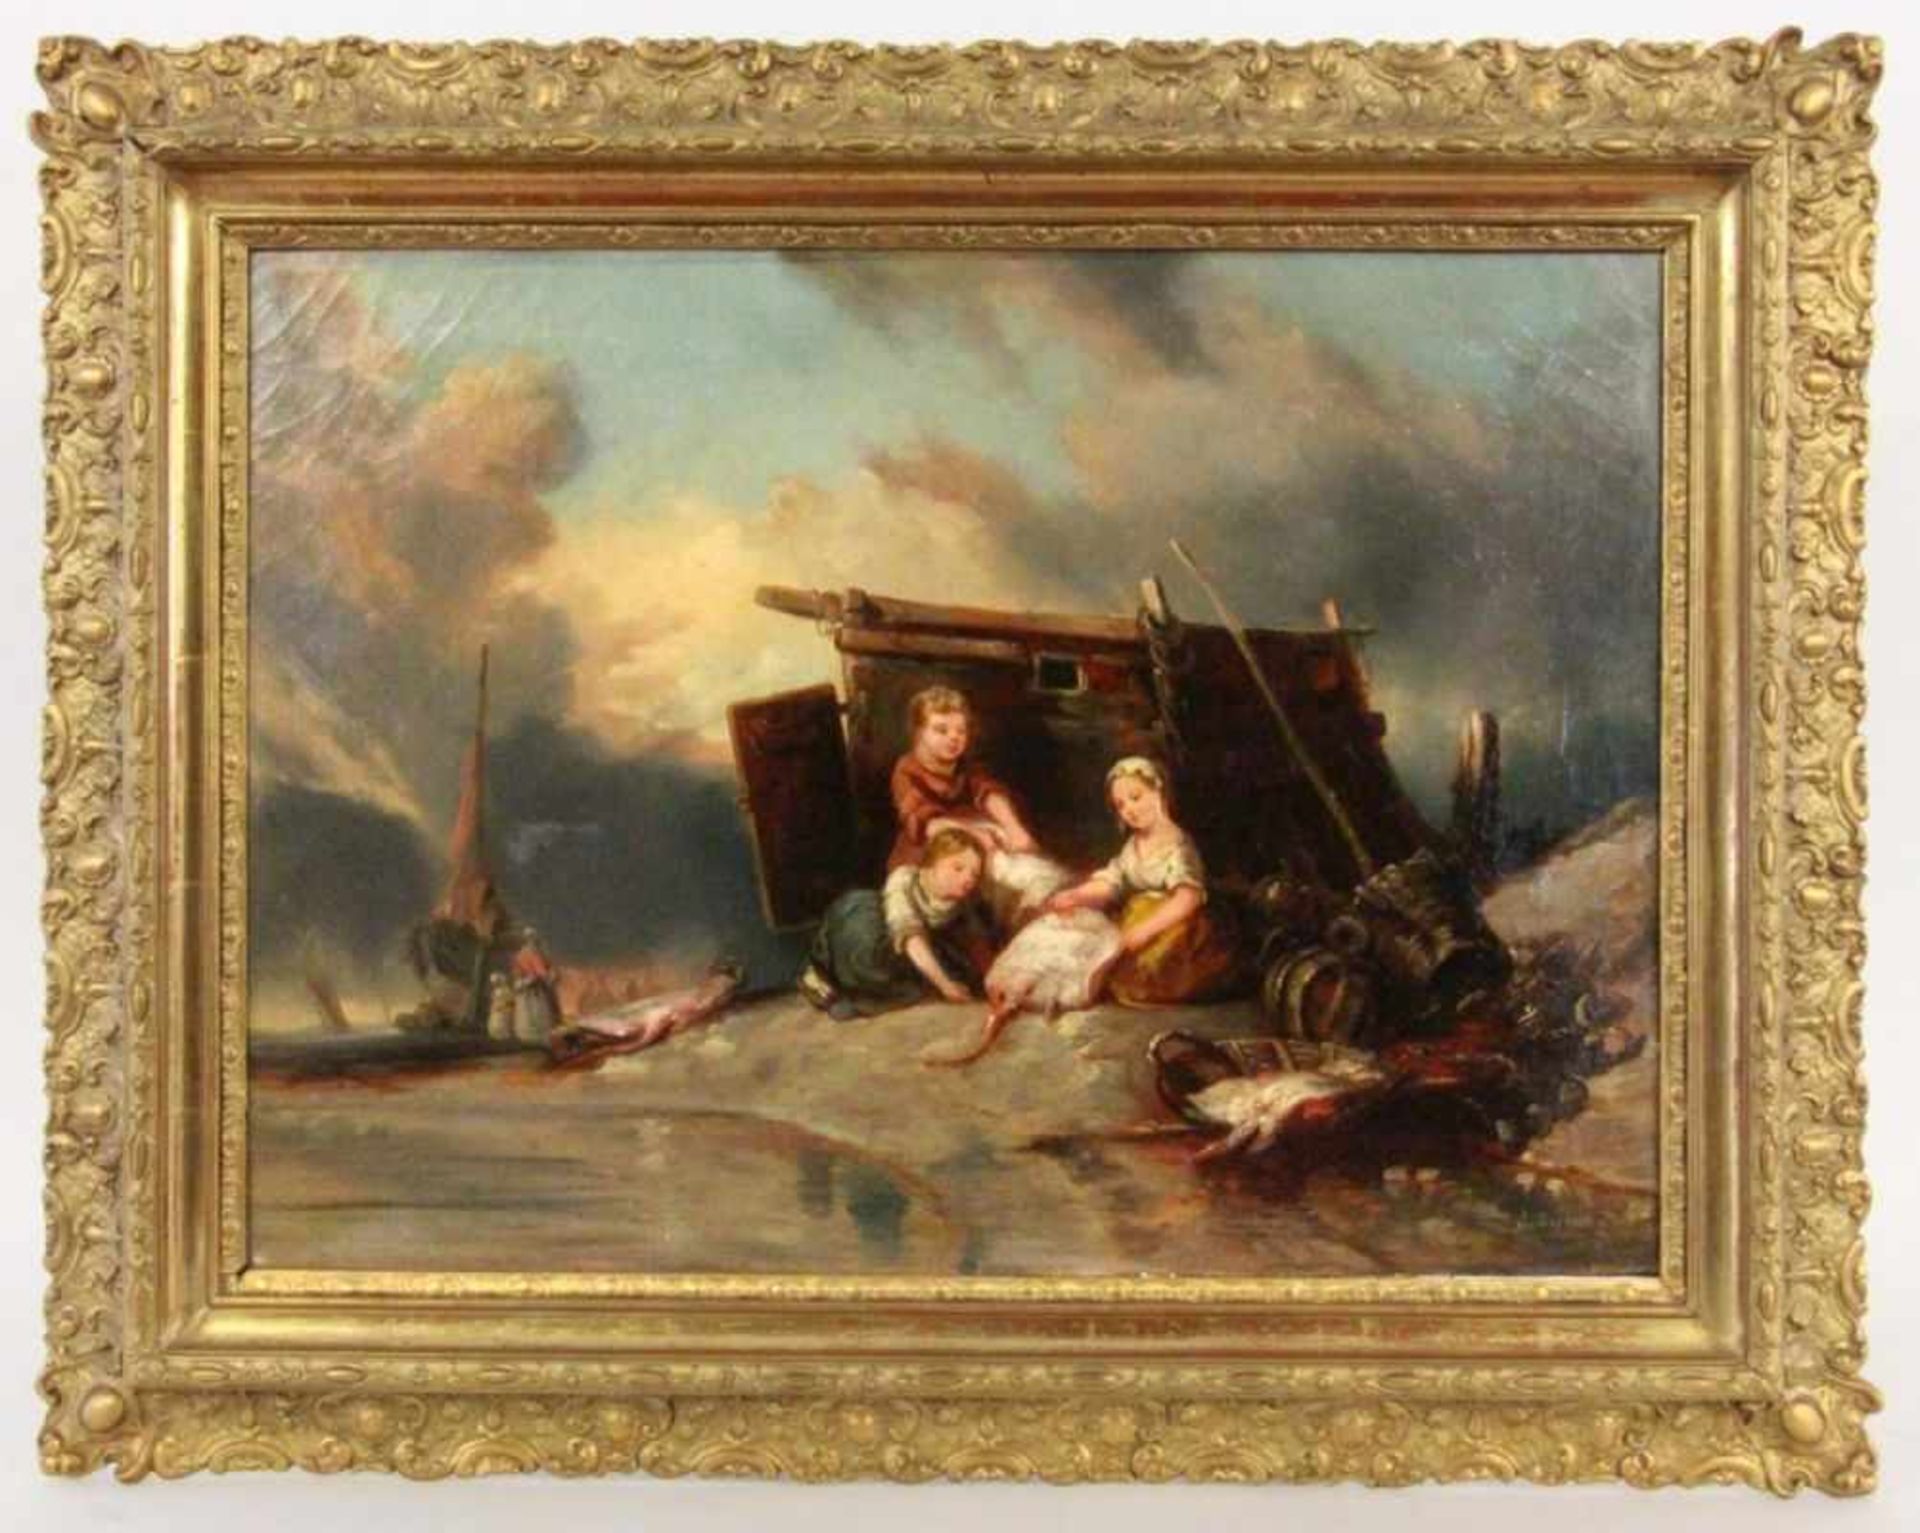 DESBOIS, J.Frankreich um 1840 Drei Fischerkinder mit frischen Fischen am Ufer. Im Hintergrund ein